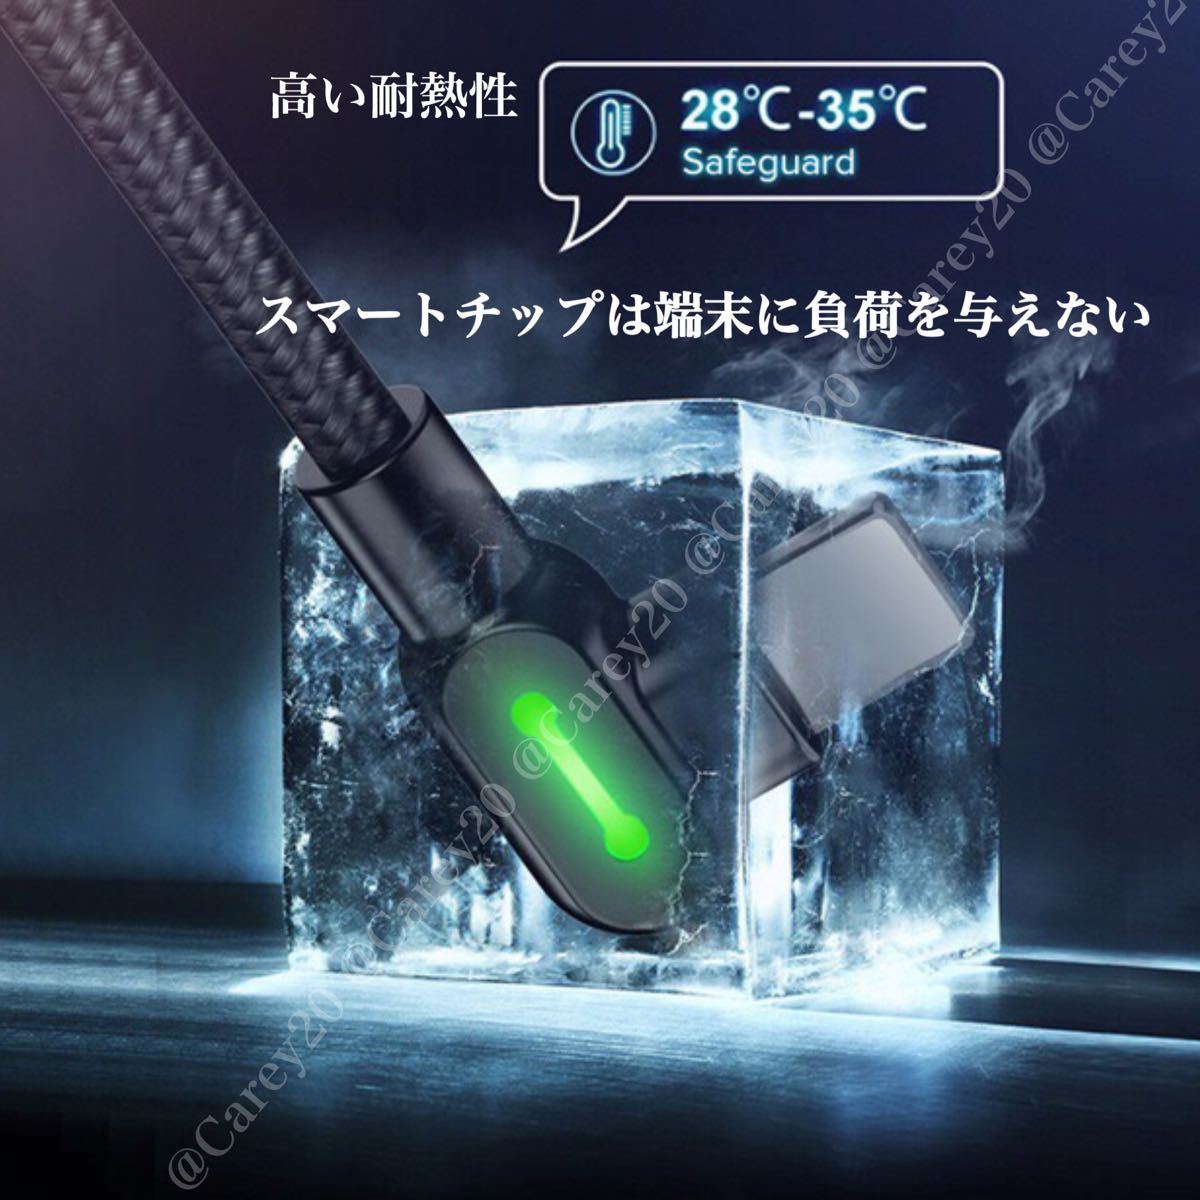 【2本】 L字型 1.8m/mcdodo社 充電 ケーブル ライトニングケーブル iPhone 急速 充電器 USB データ転送